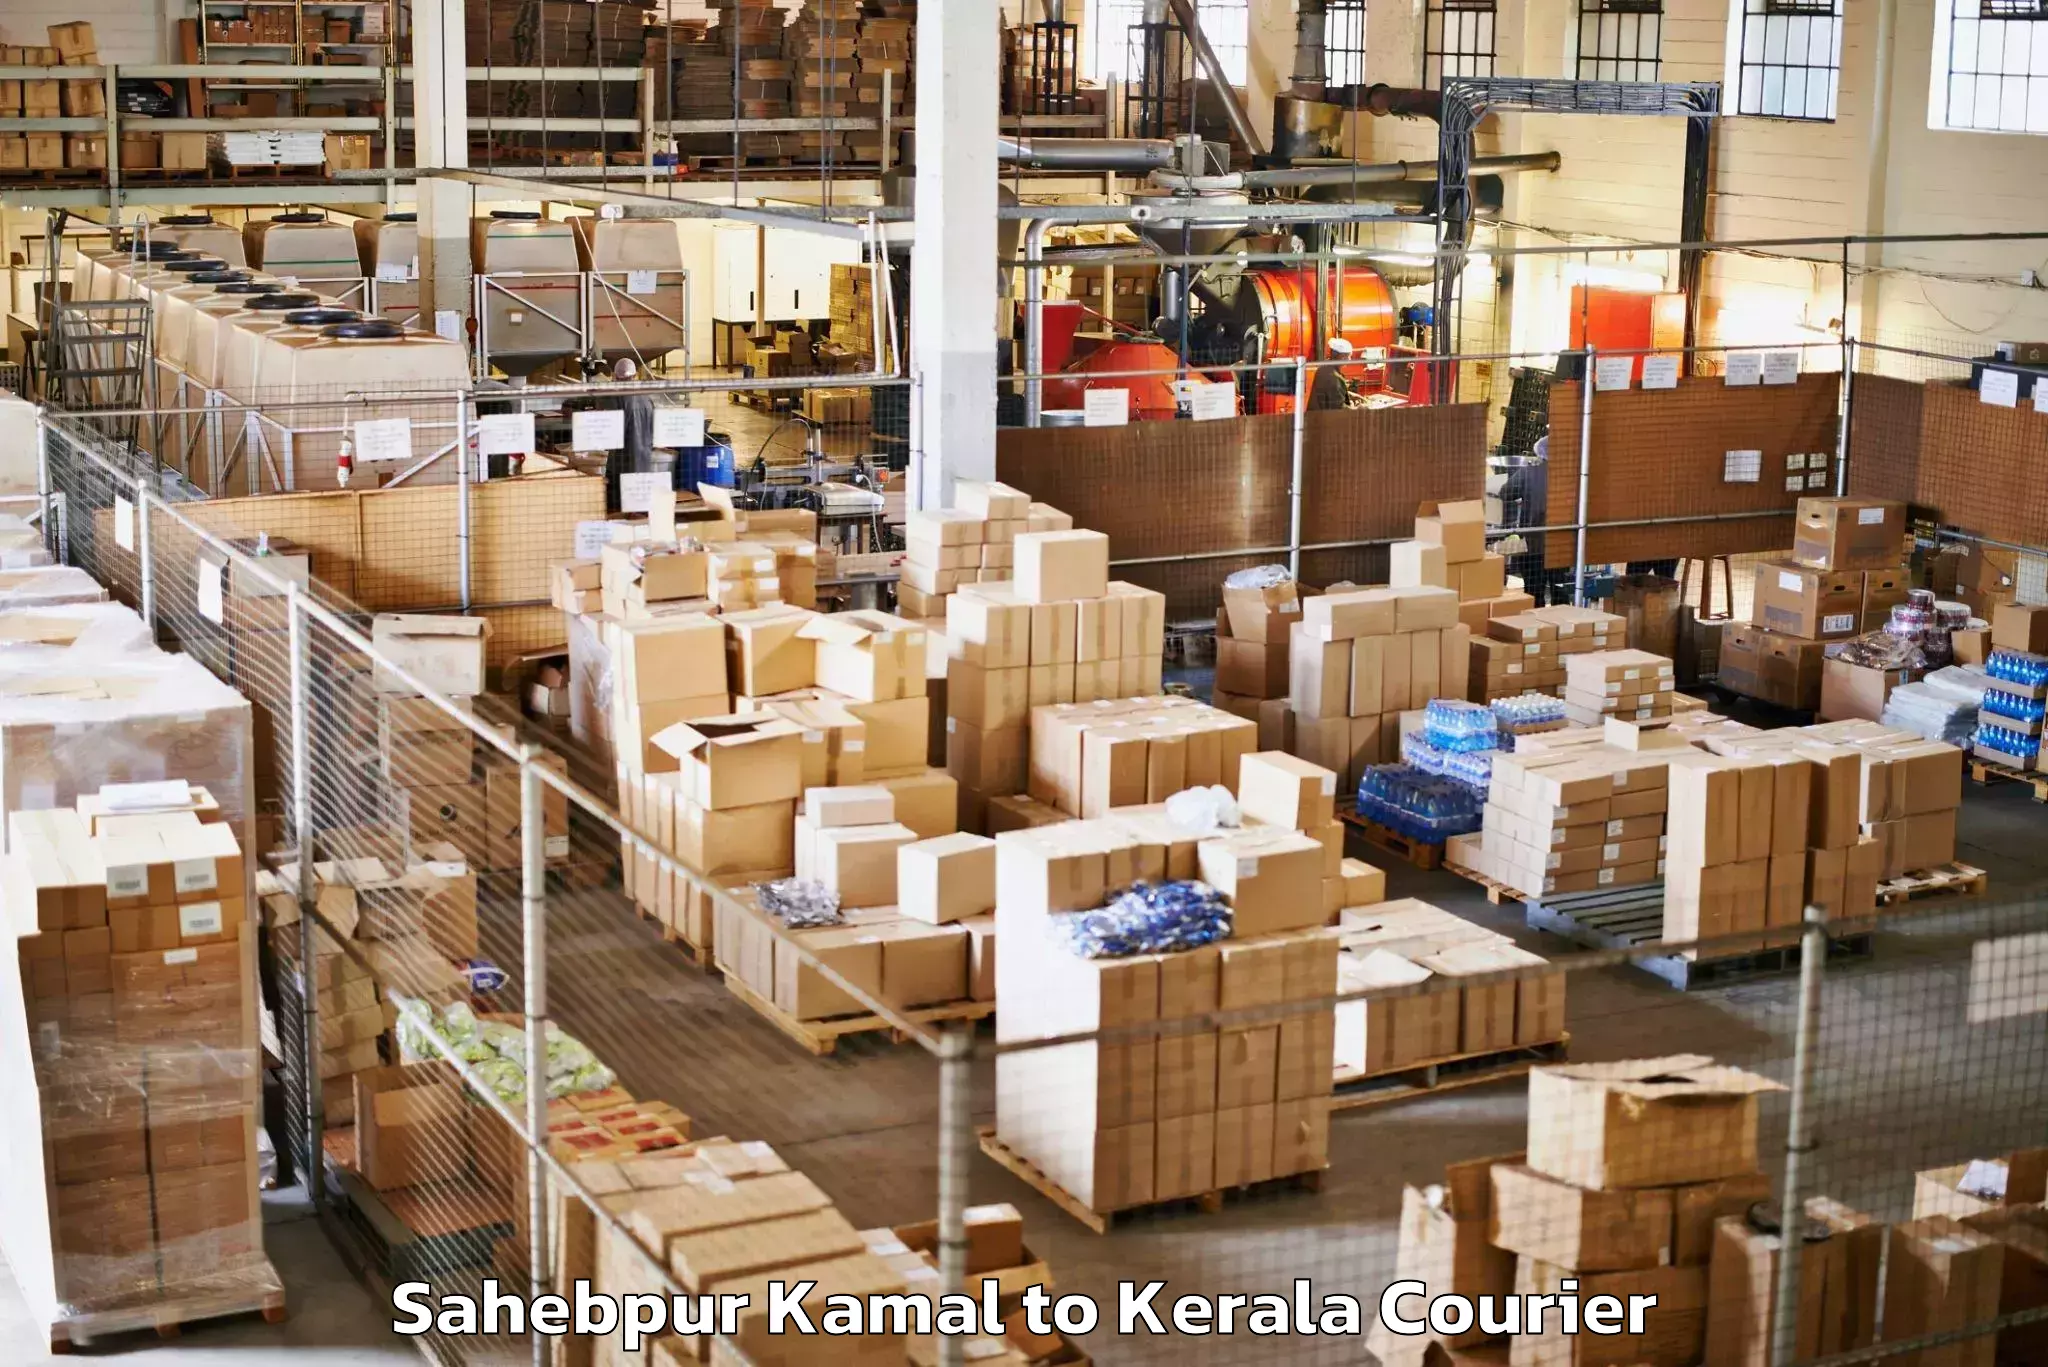 Luggage shipping management Sahebpur Kamal to Kottayam